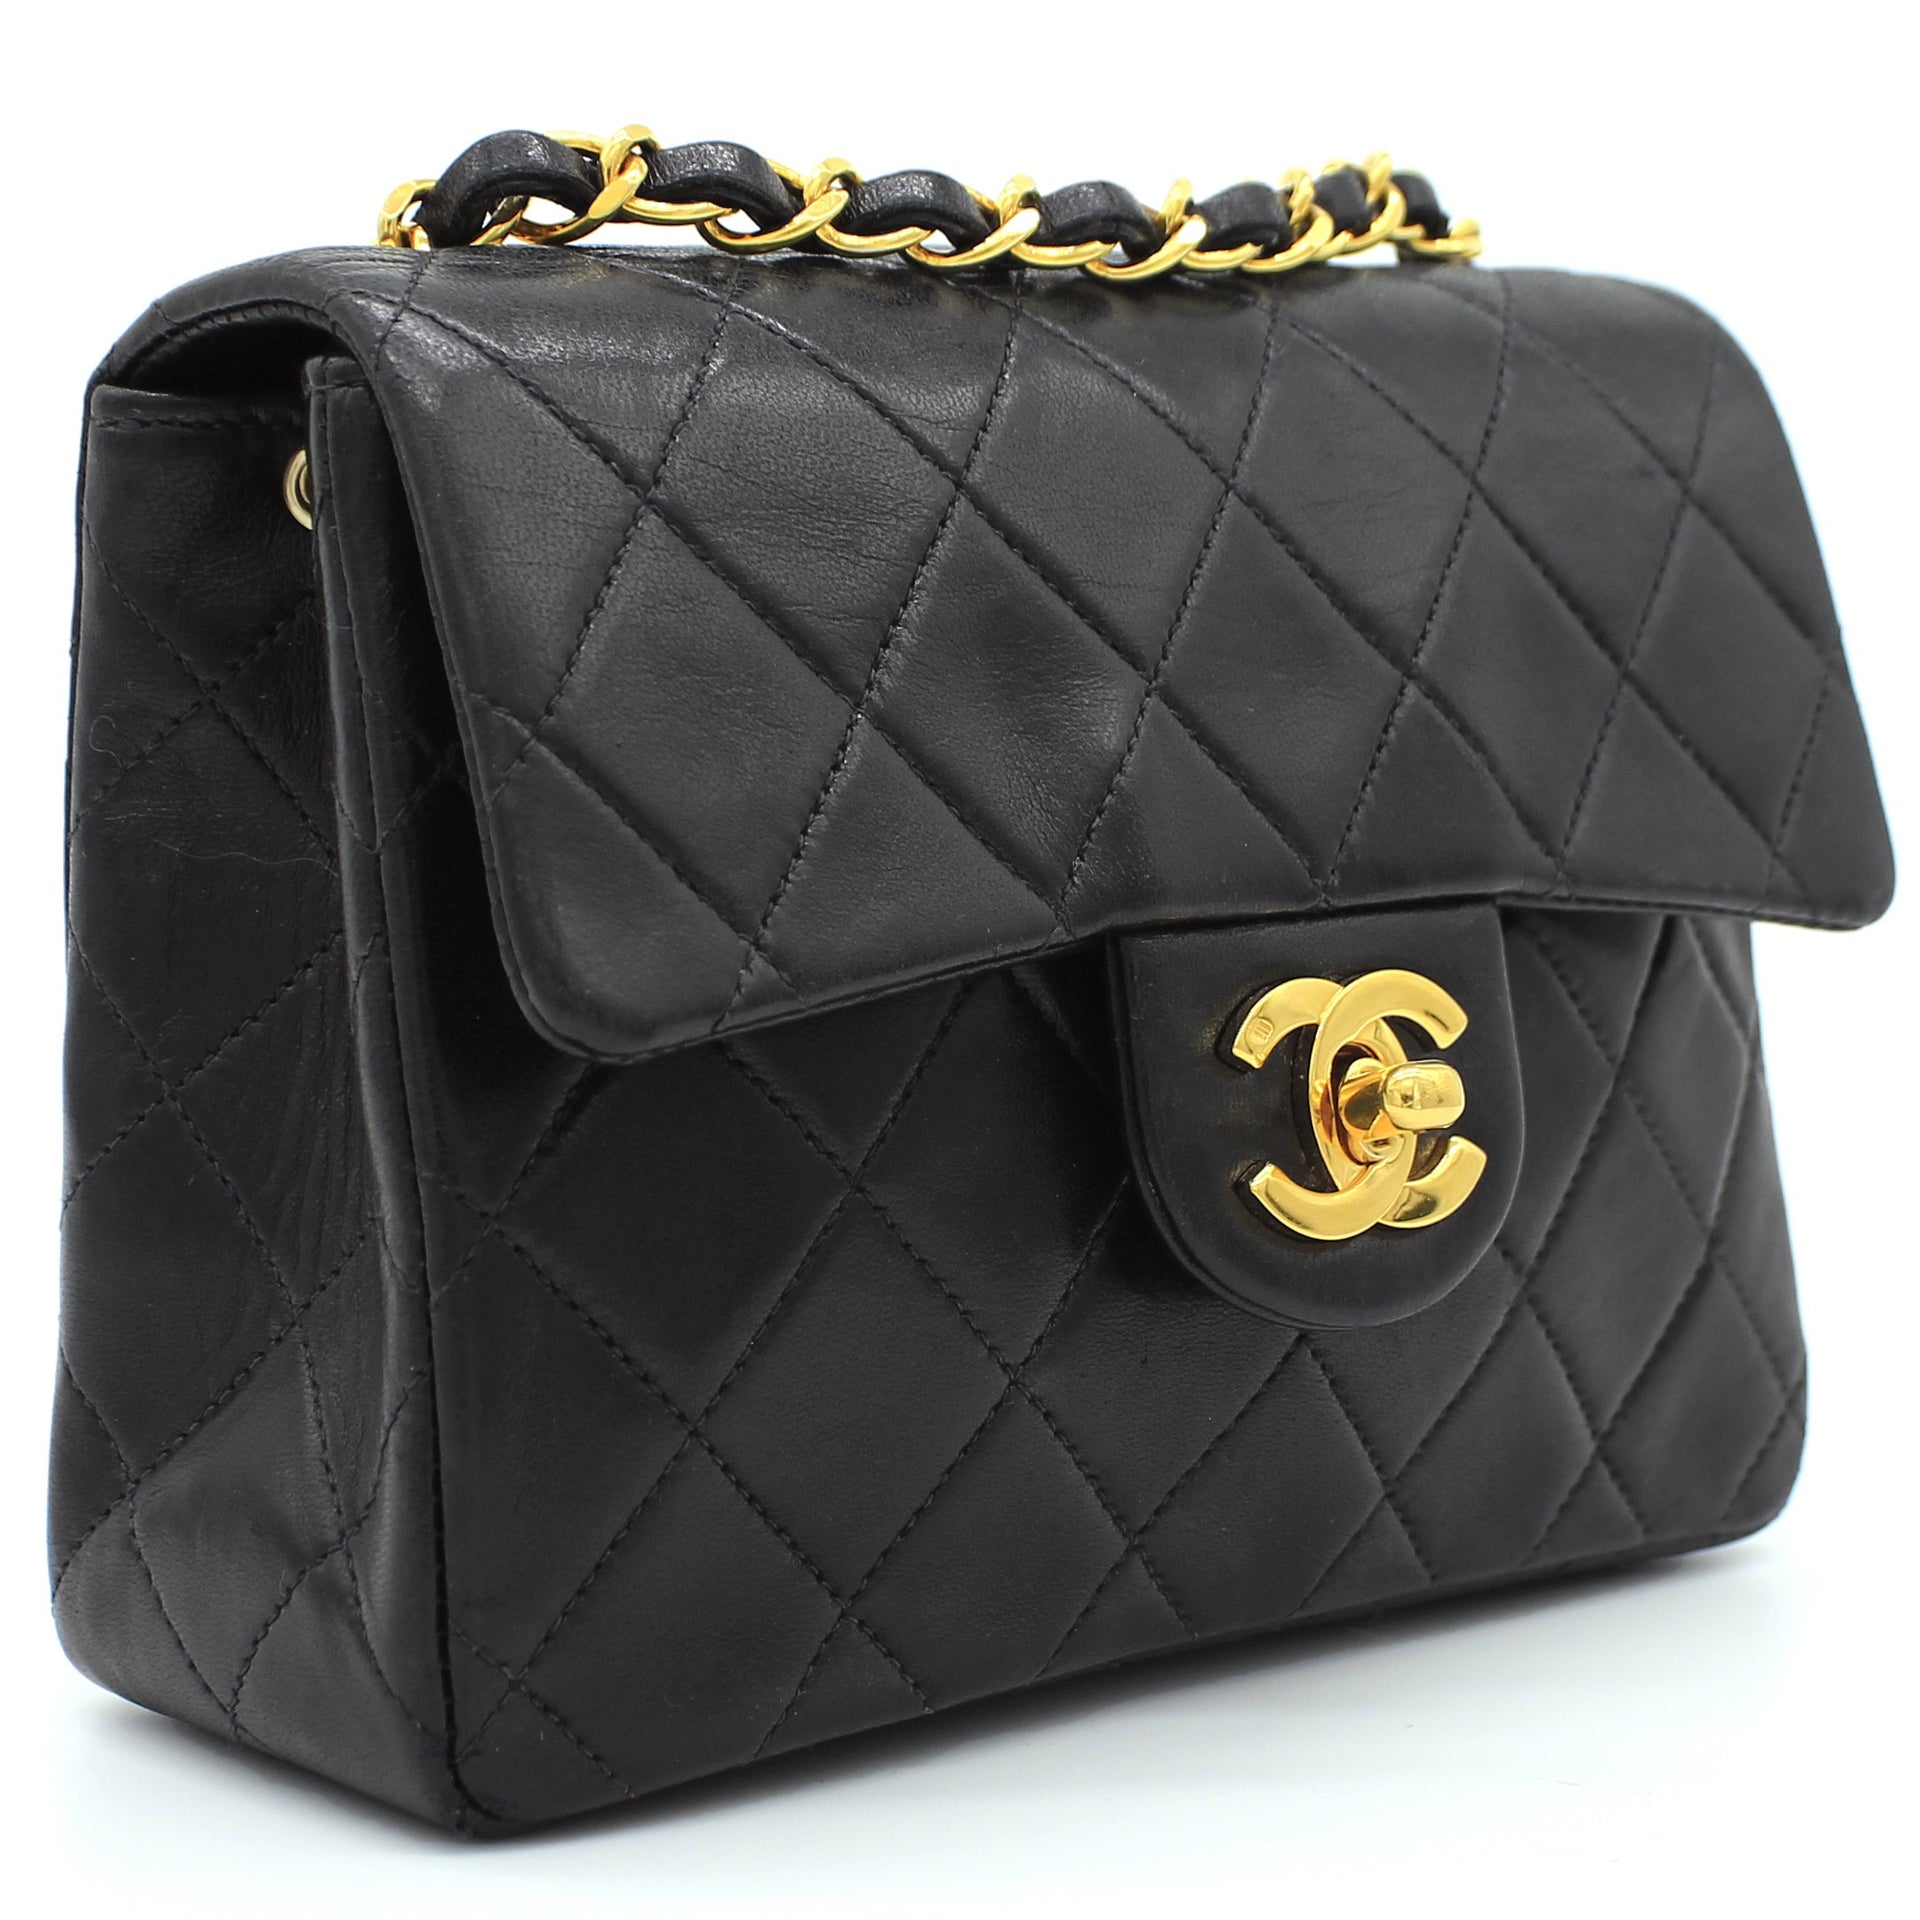 Chanel Square Mini Bag Review / Comparing Caviar vs. Lambskin 